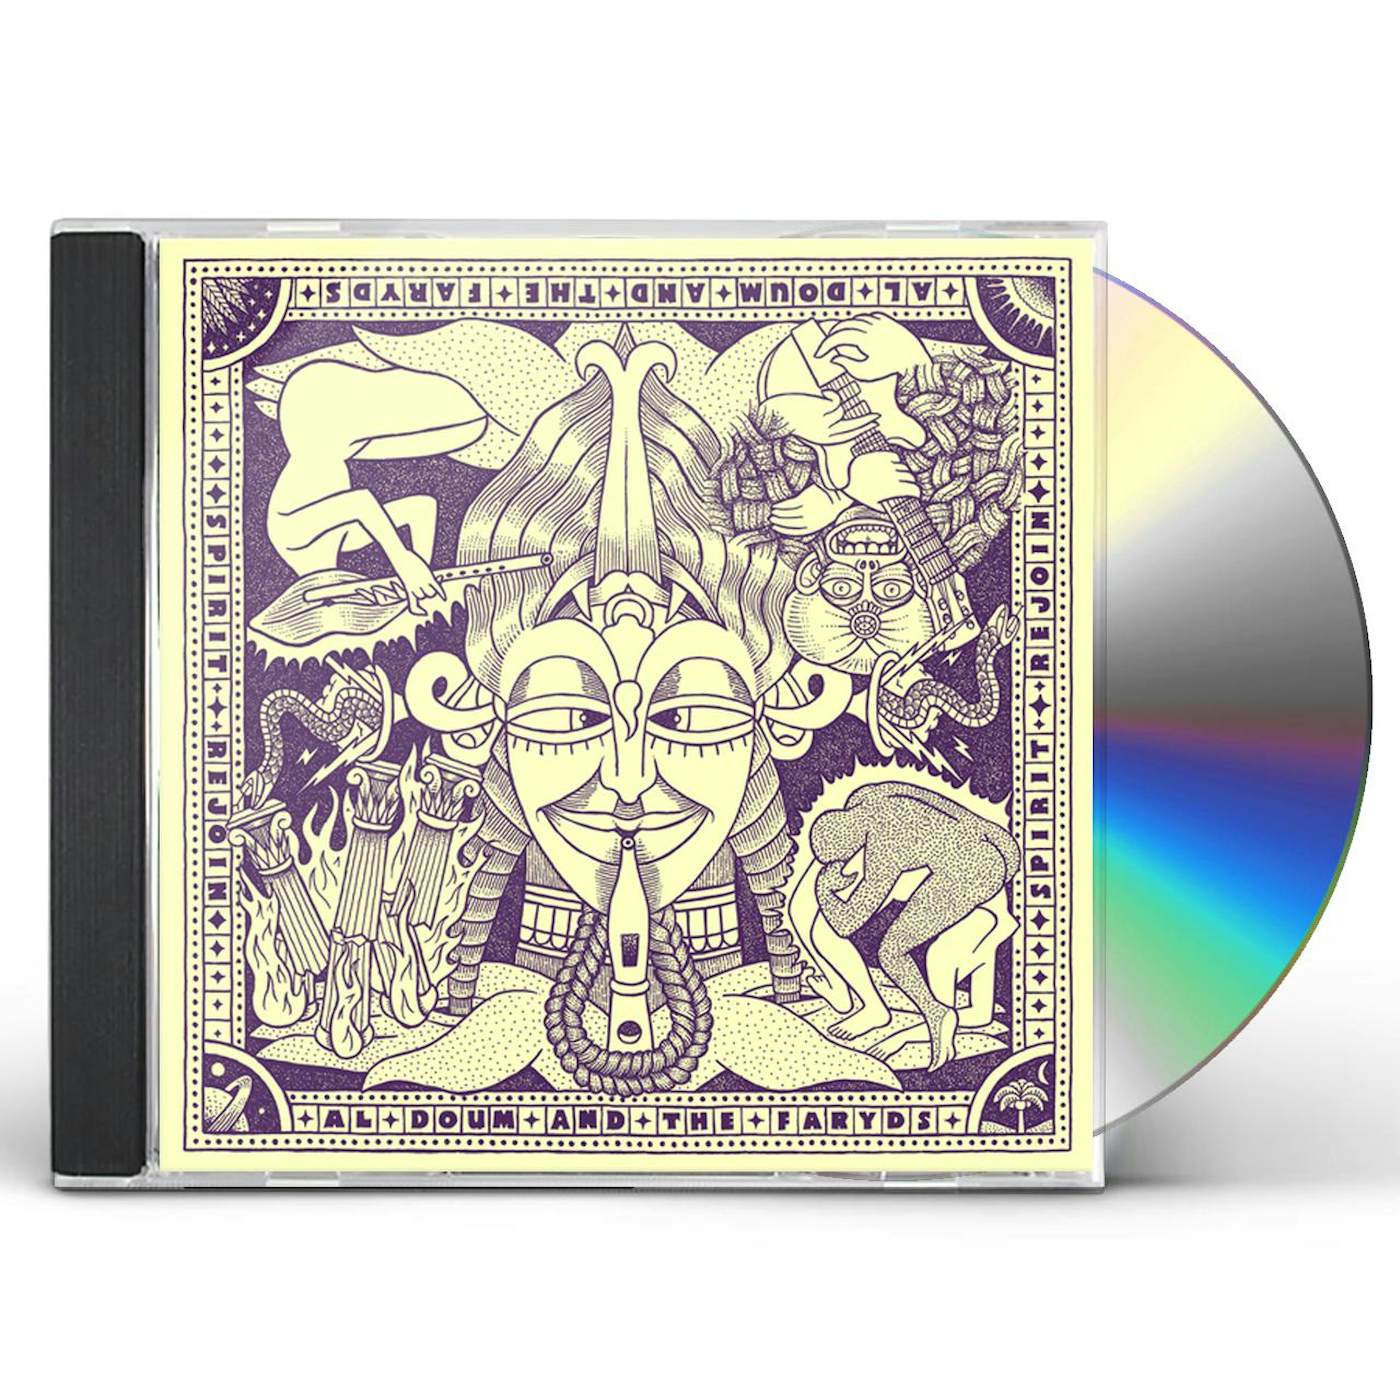 Al Doum & The Faryds SPIRIT REJOIN CD